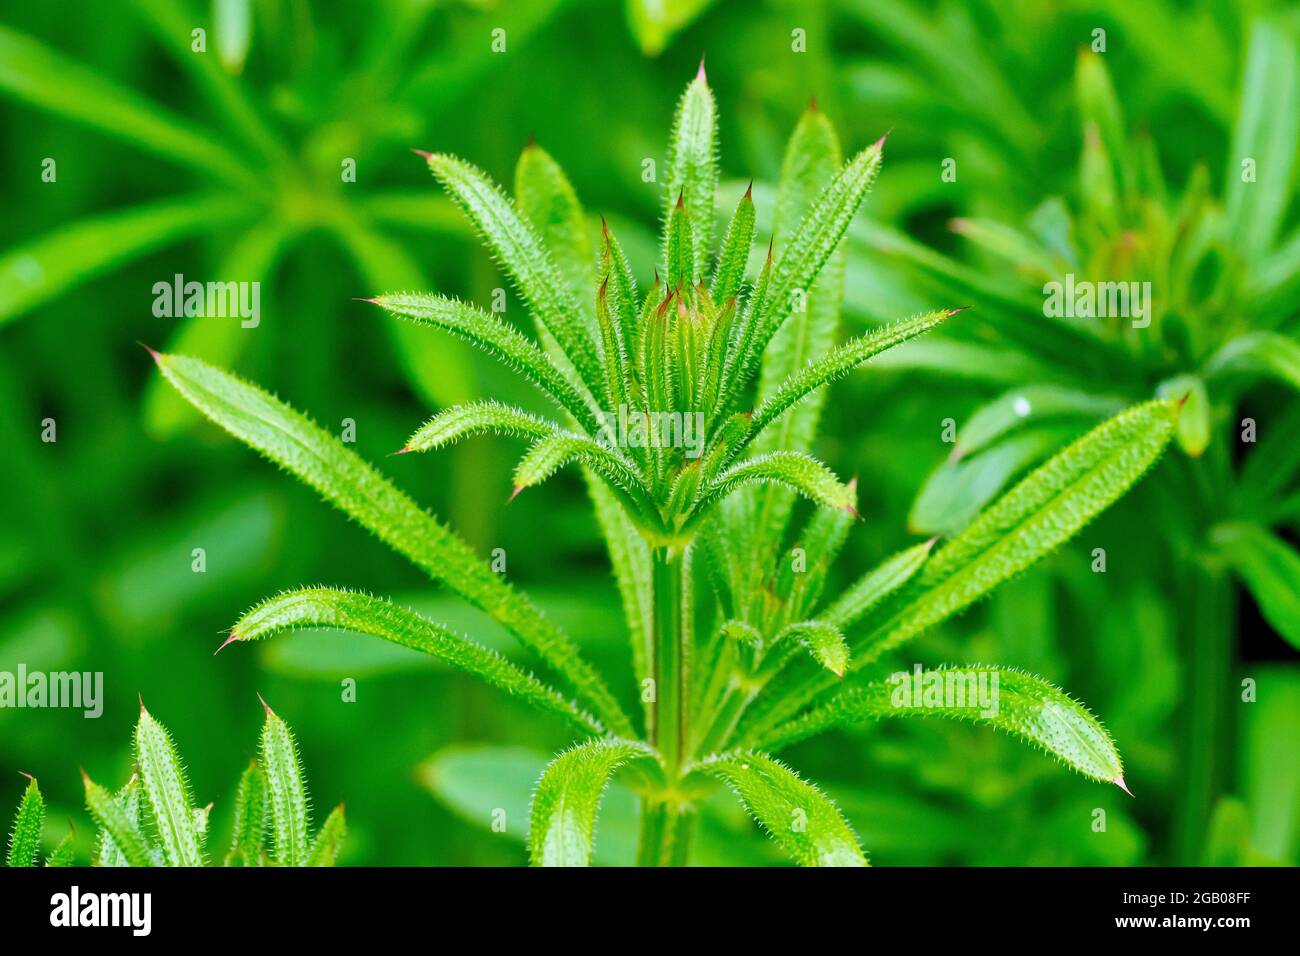 Les castors (galium aparine), également connus sous le nom de Goosegrass ou Sticky Willie, montrent en gros plan le sommet de la plante laisseuse qui pousse au printemps. Banque D'Images